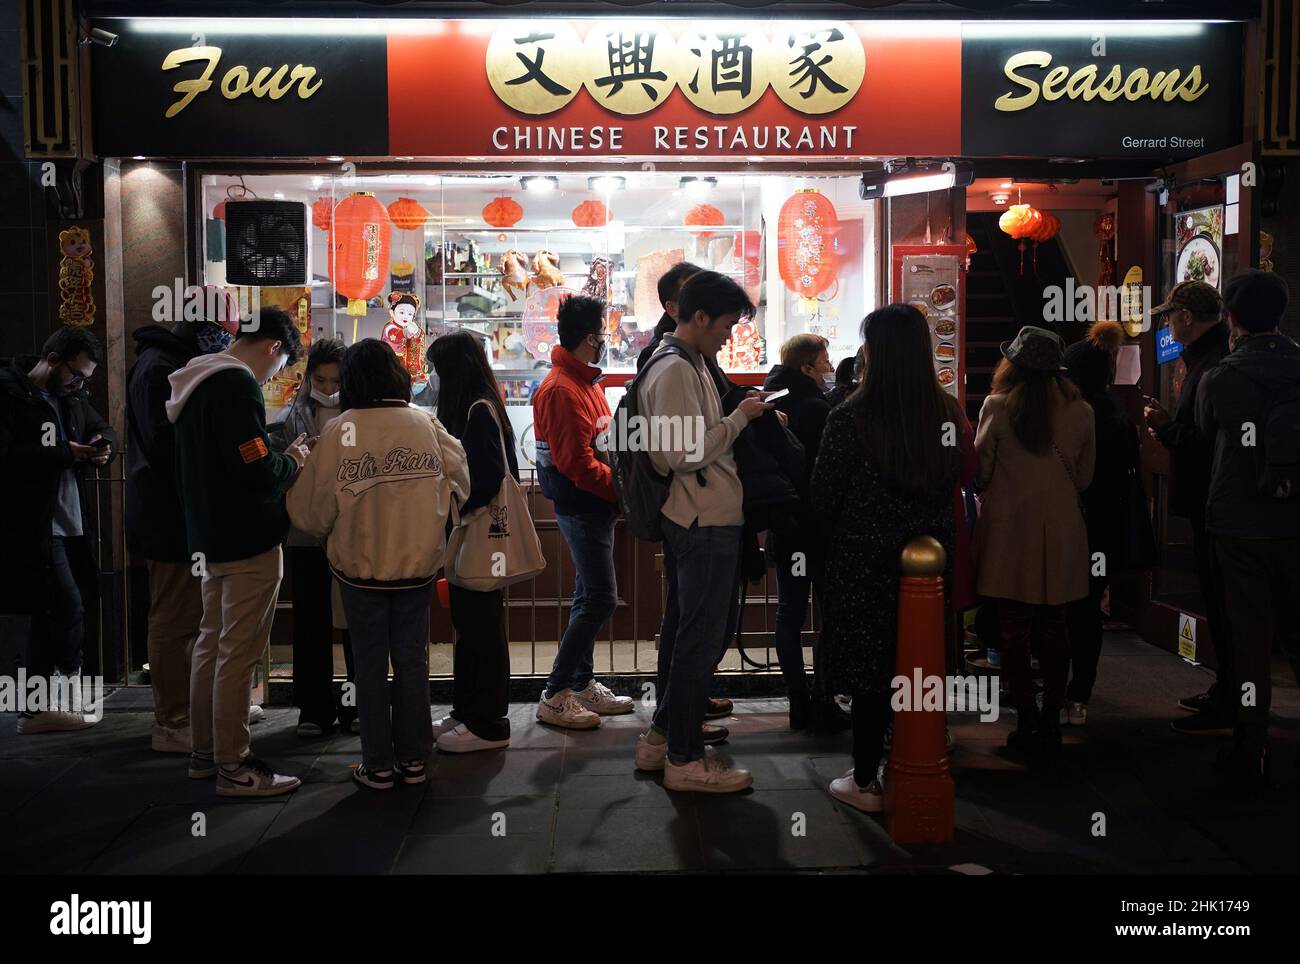 Des gens font la queue devant un restaurant à Chinatown, Londres, célébrant le nouvel an lunaire.Le nouvel an lunaire, qui commence le 1 février, est le début d'une fête de deux semaines et est la plus importante fête pour des millions de personnes dans le monde entier.Date de la photo: Mardi 1 février 2022. Banque D'Images